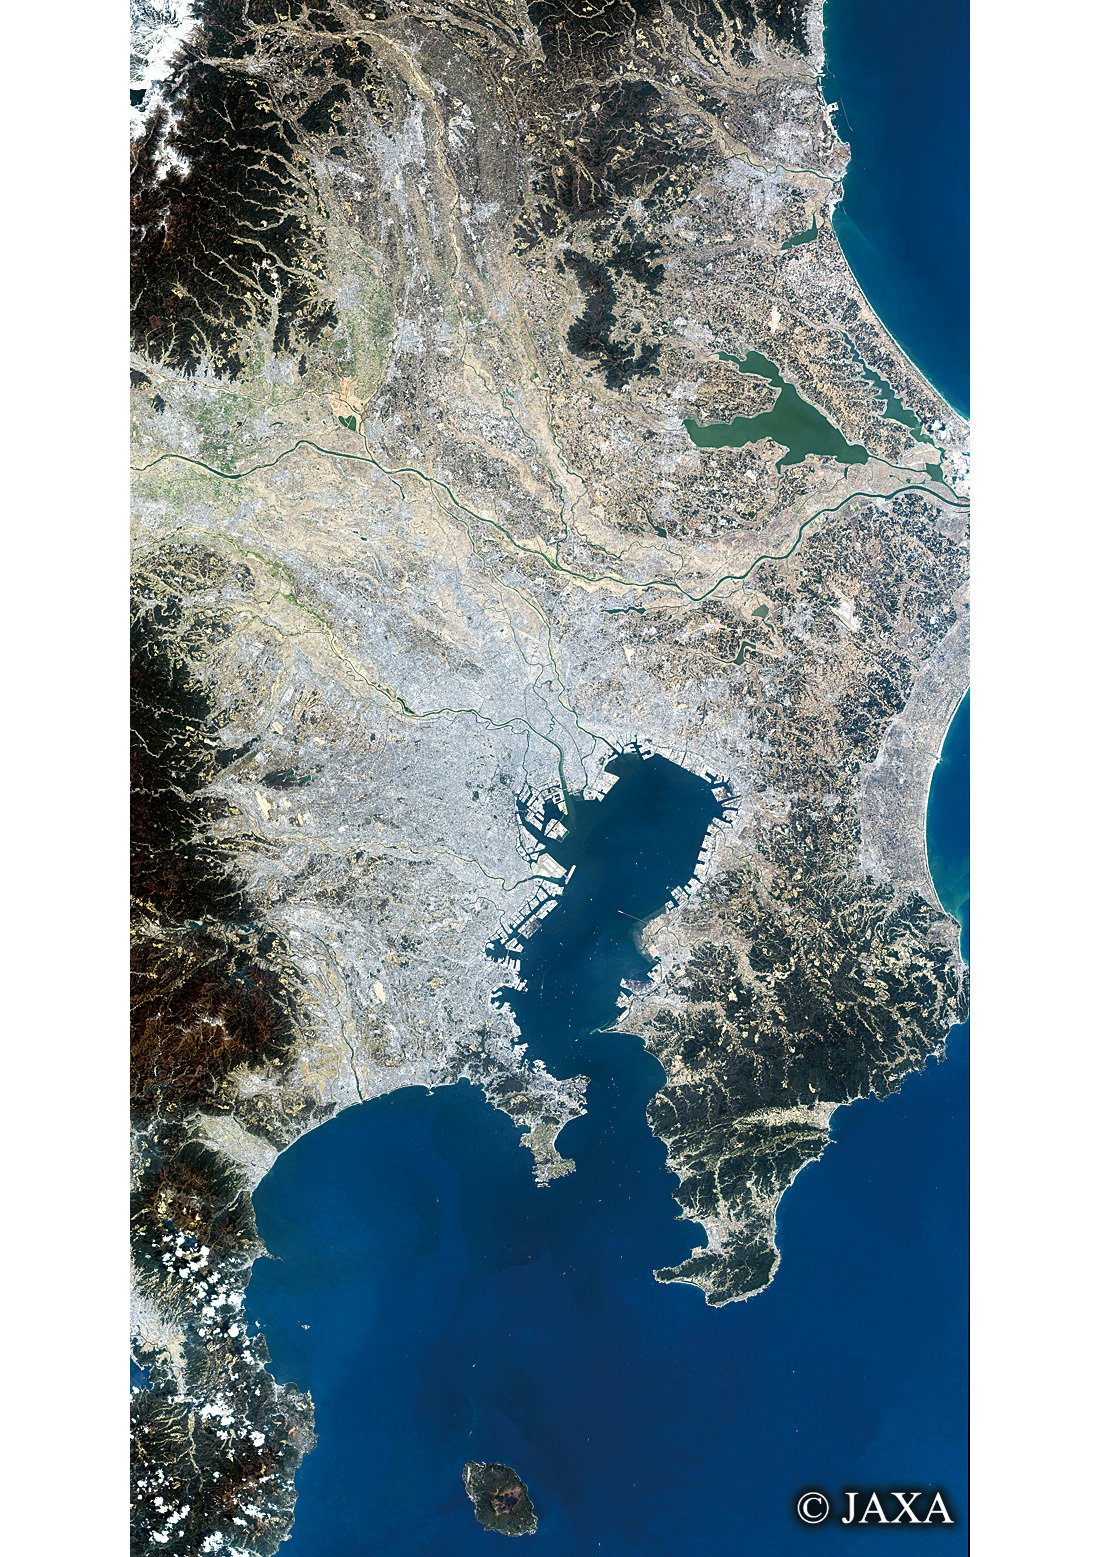 だいちから見た日本の都市 関東地方:衛星画像